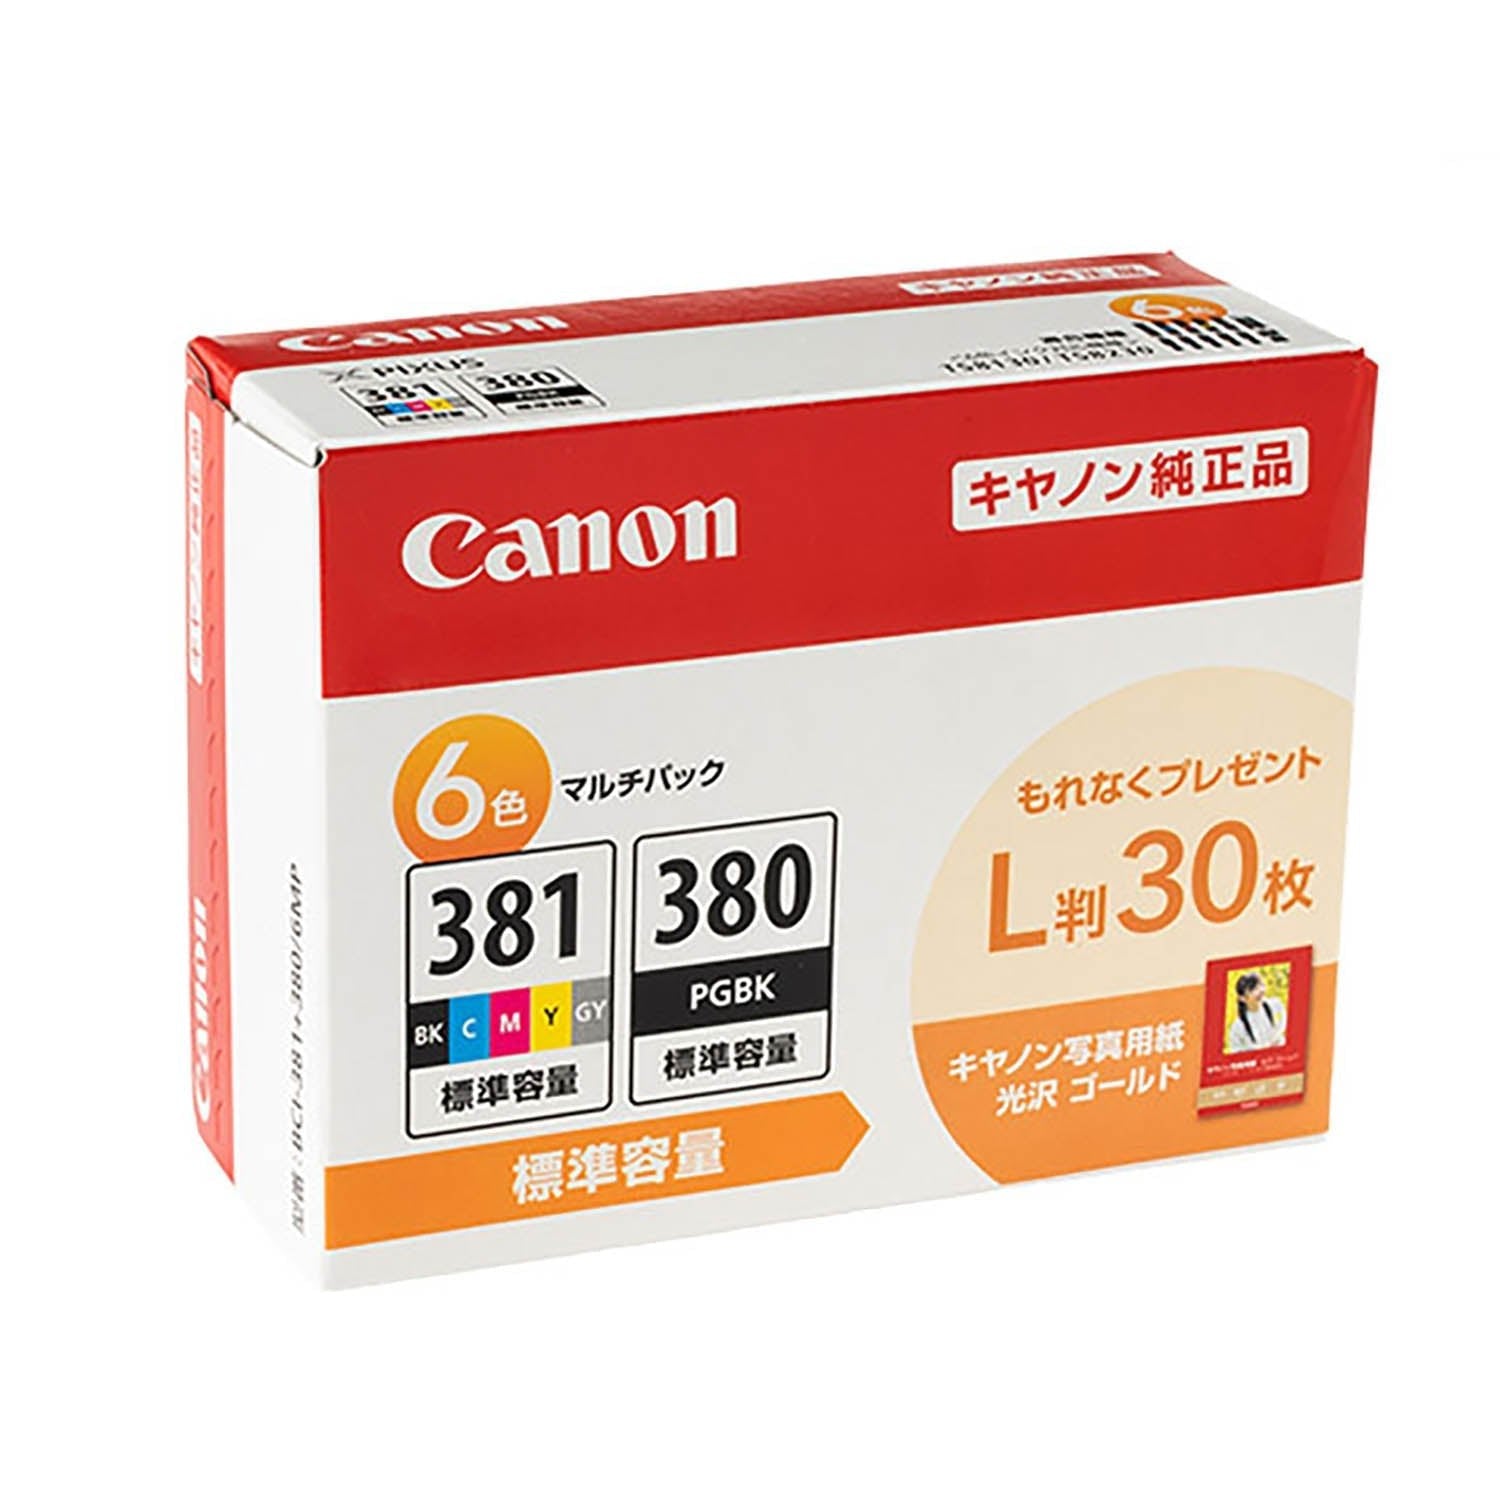 Canon BCI-381+380 6MPの GＹインクのみ - 店舗用品